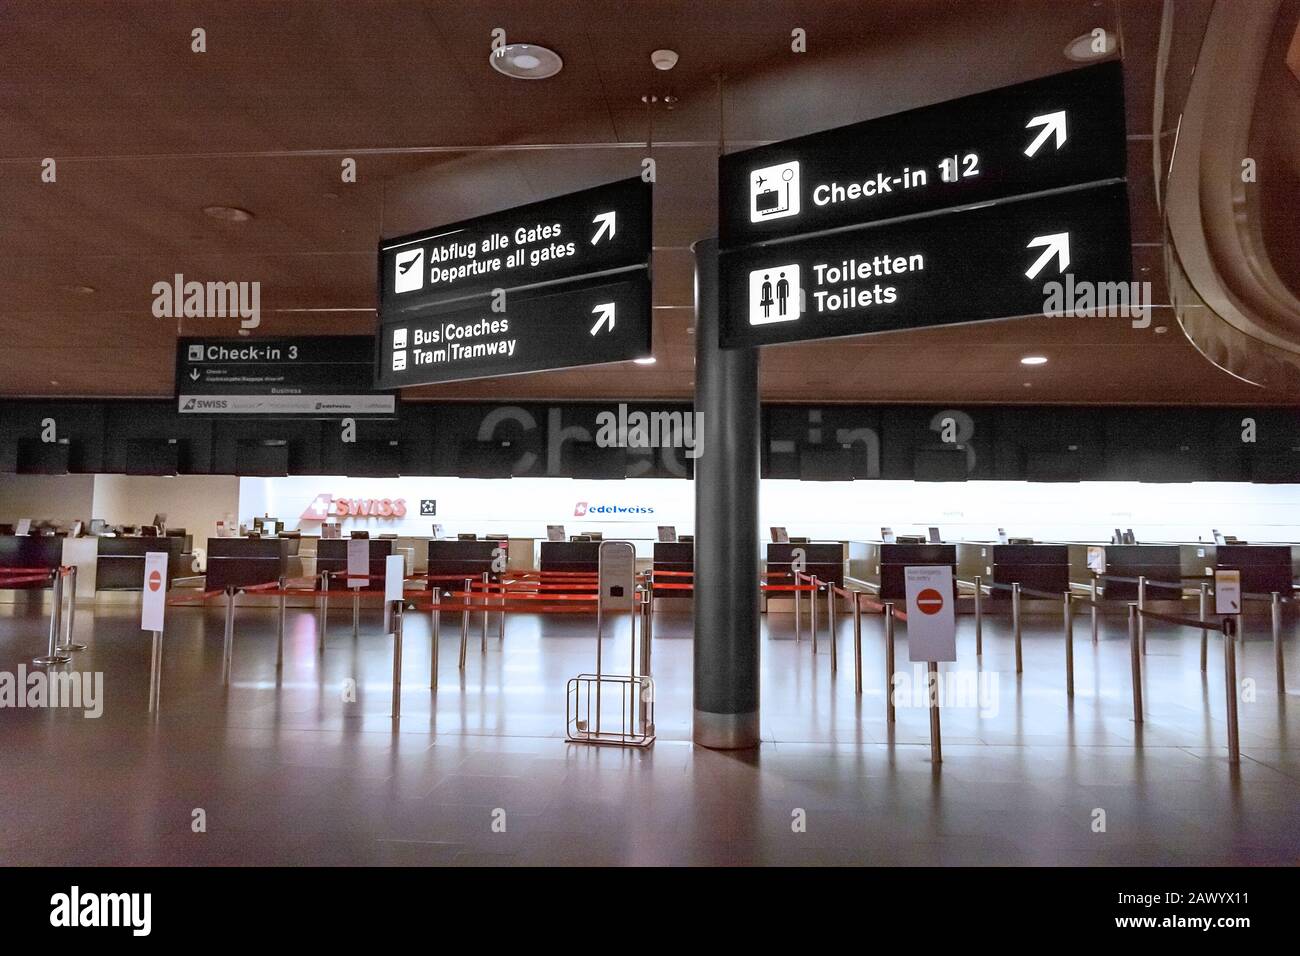 Zürich, Schweiz - 11. Juni 2017: Flughafen Zürich, Check-in-Schalter 3,  Schild zu Abflugsteig, Straßenbahn, Toiletten Stockfotografie - Alamy